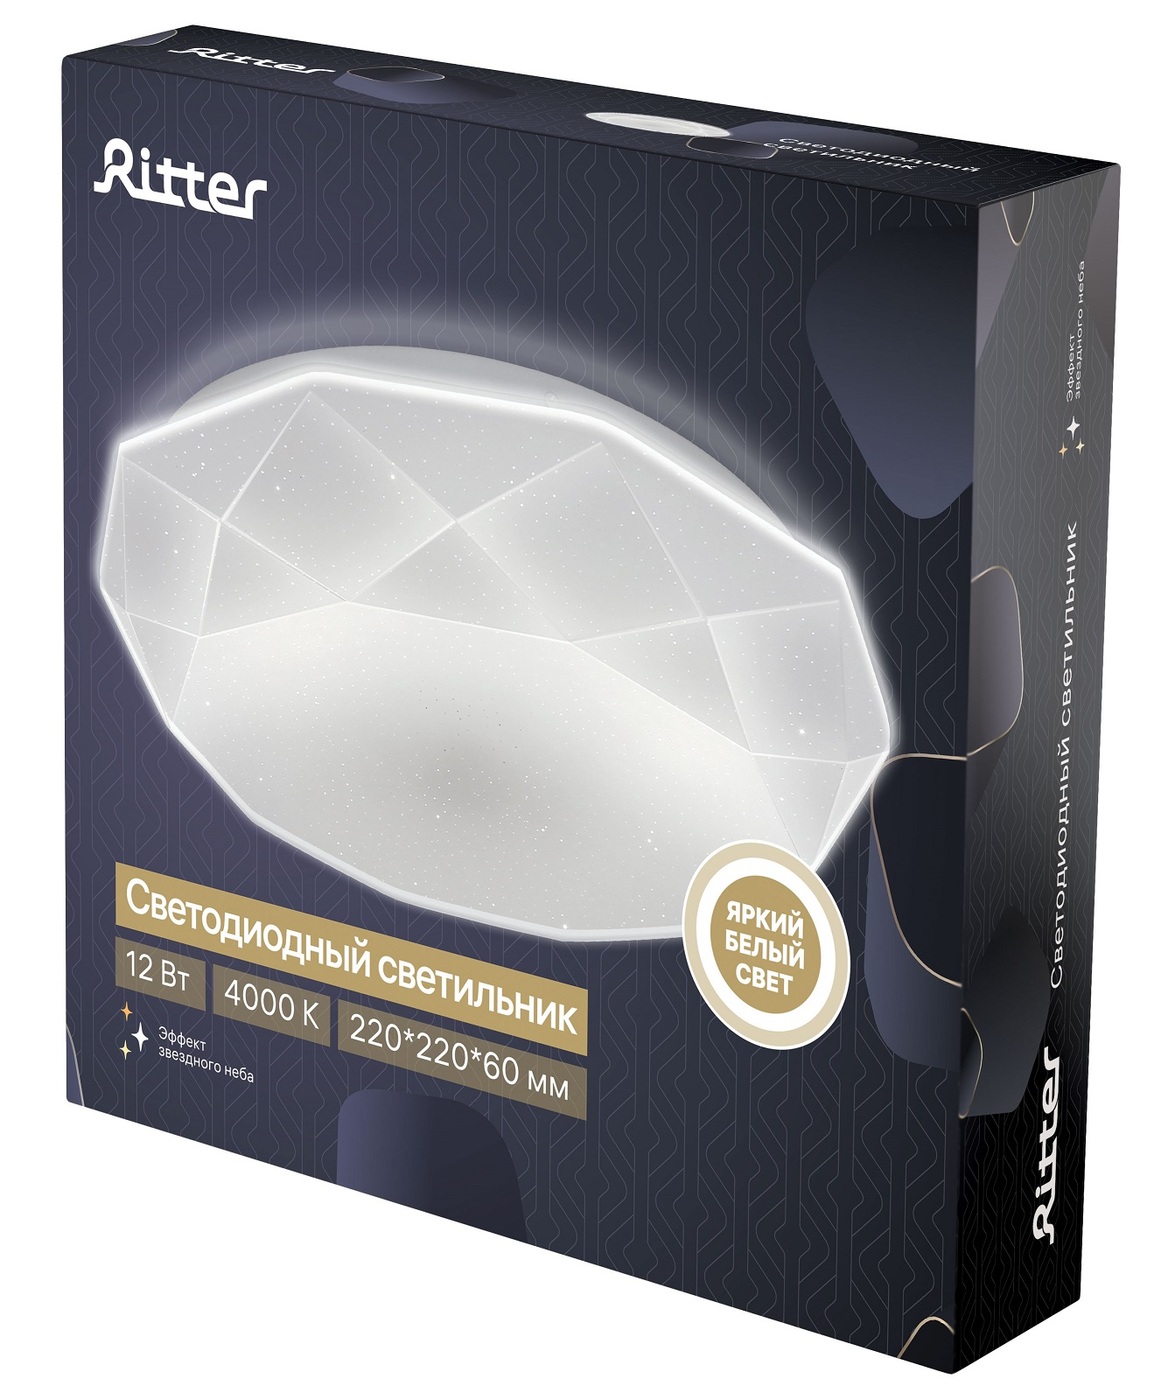 Потолочный светильник Ritter Brilliance 52100 6 УЦ